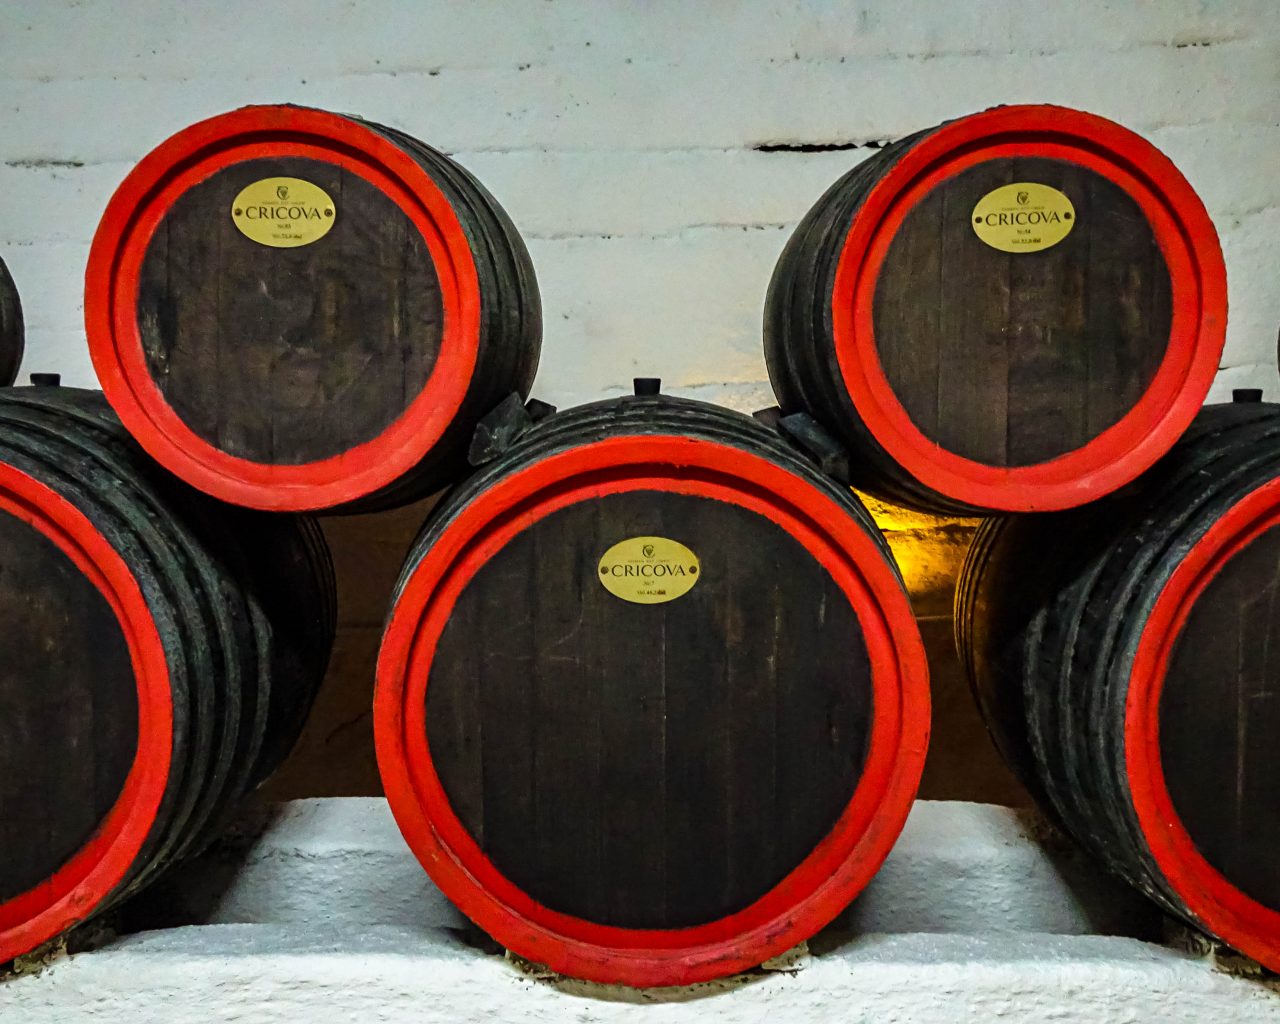 Wijntonnen-Cricova-winery